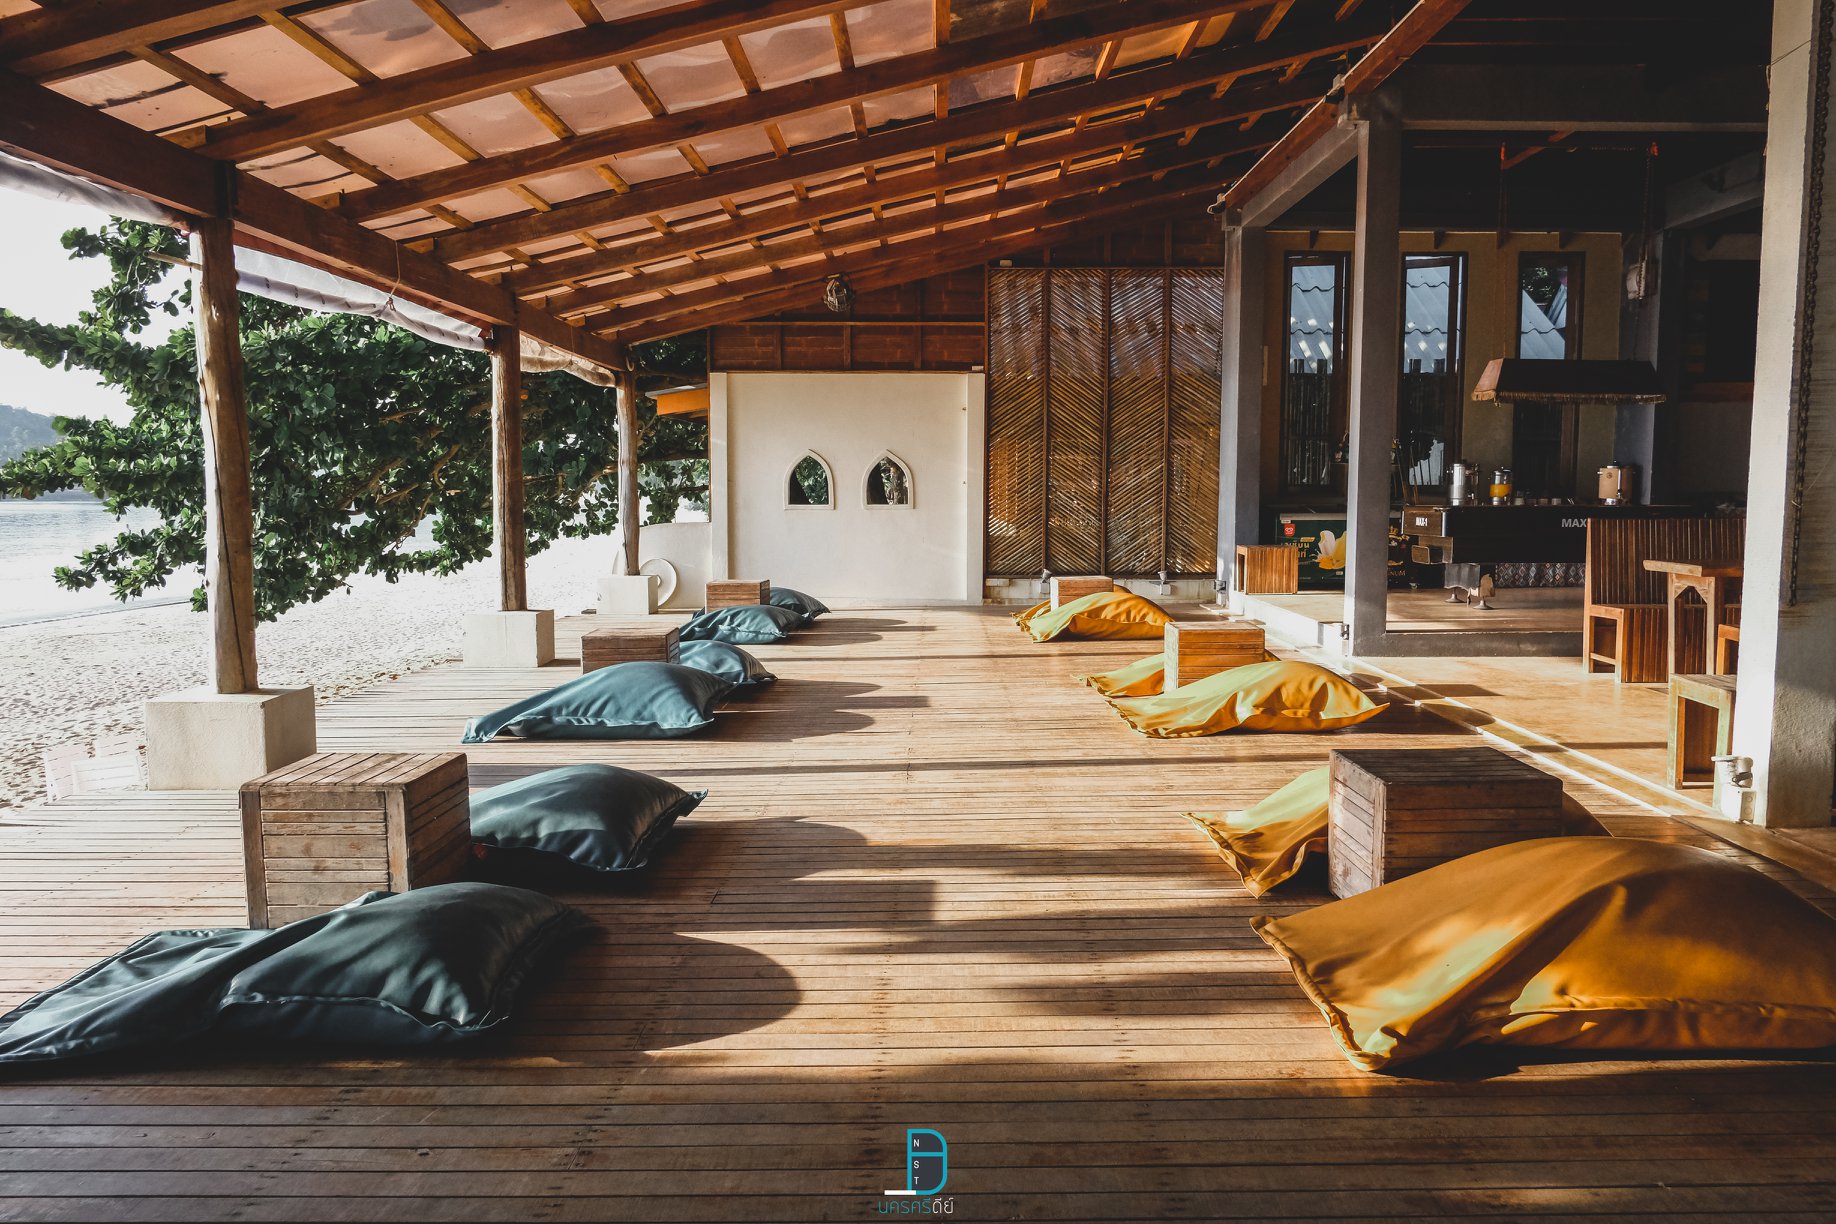 บรรยากาศ - Blue Surf Cafe - Sichon Cabana - สิชล คาบาน่า ที่พักสุดหรูริมทะเล พร้อมห้องพักสไตล์ Modern ริมสระ สิชล นครศรีธรรมราช